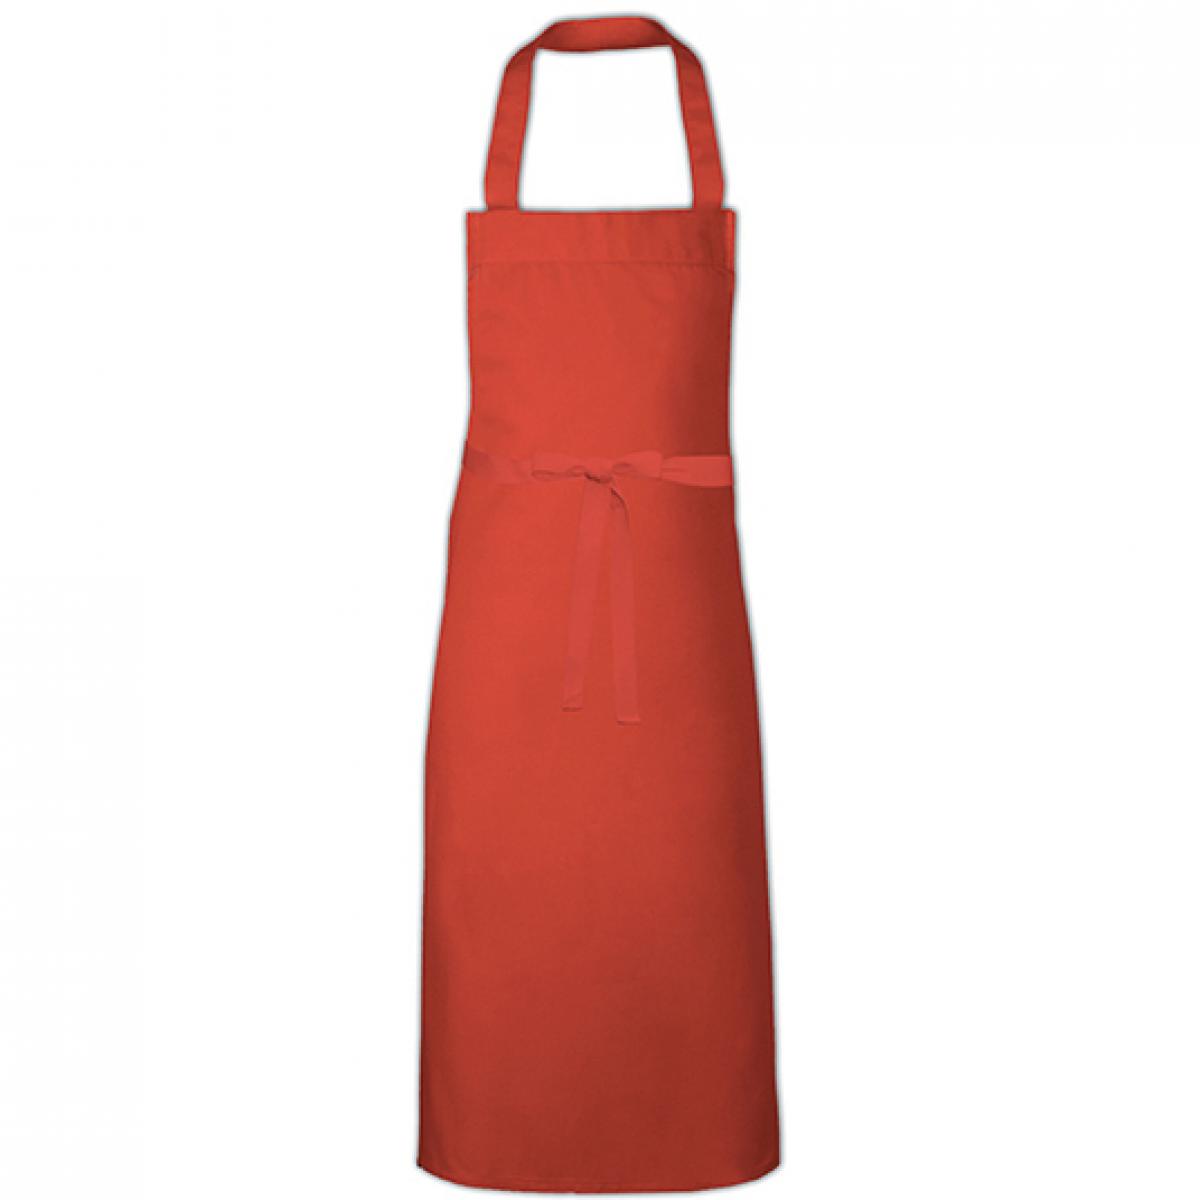 Hersteller: Link Kitchen Wear Herstellernummer: BBQ11073 Artikelbezeichnung: Barbecue Apron XL - 73 x 110 cm - Waschbar bis 60 °C Farbe: Terracotta (ca. Pantone 4840)